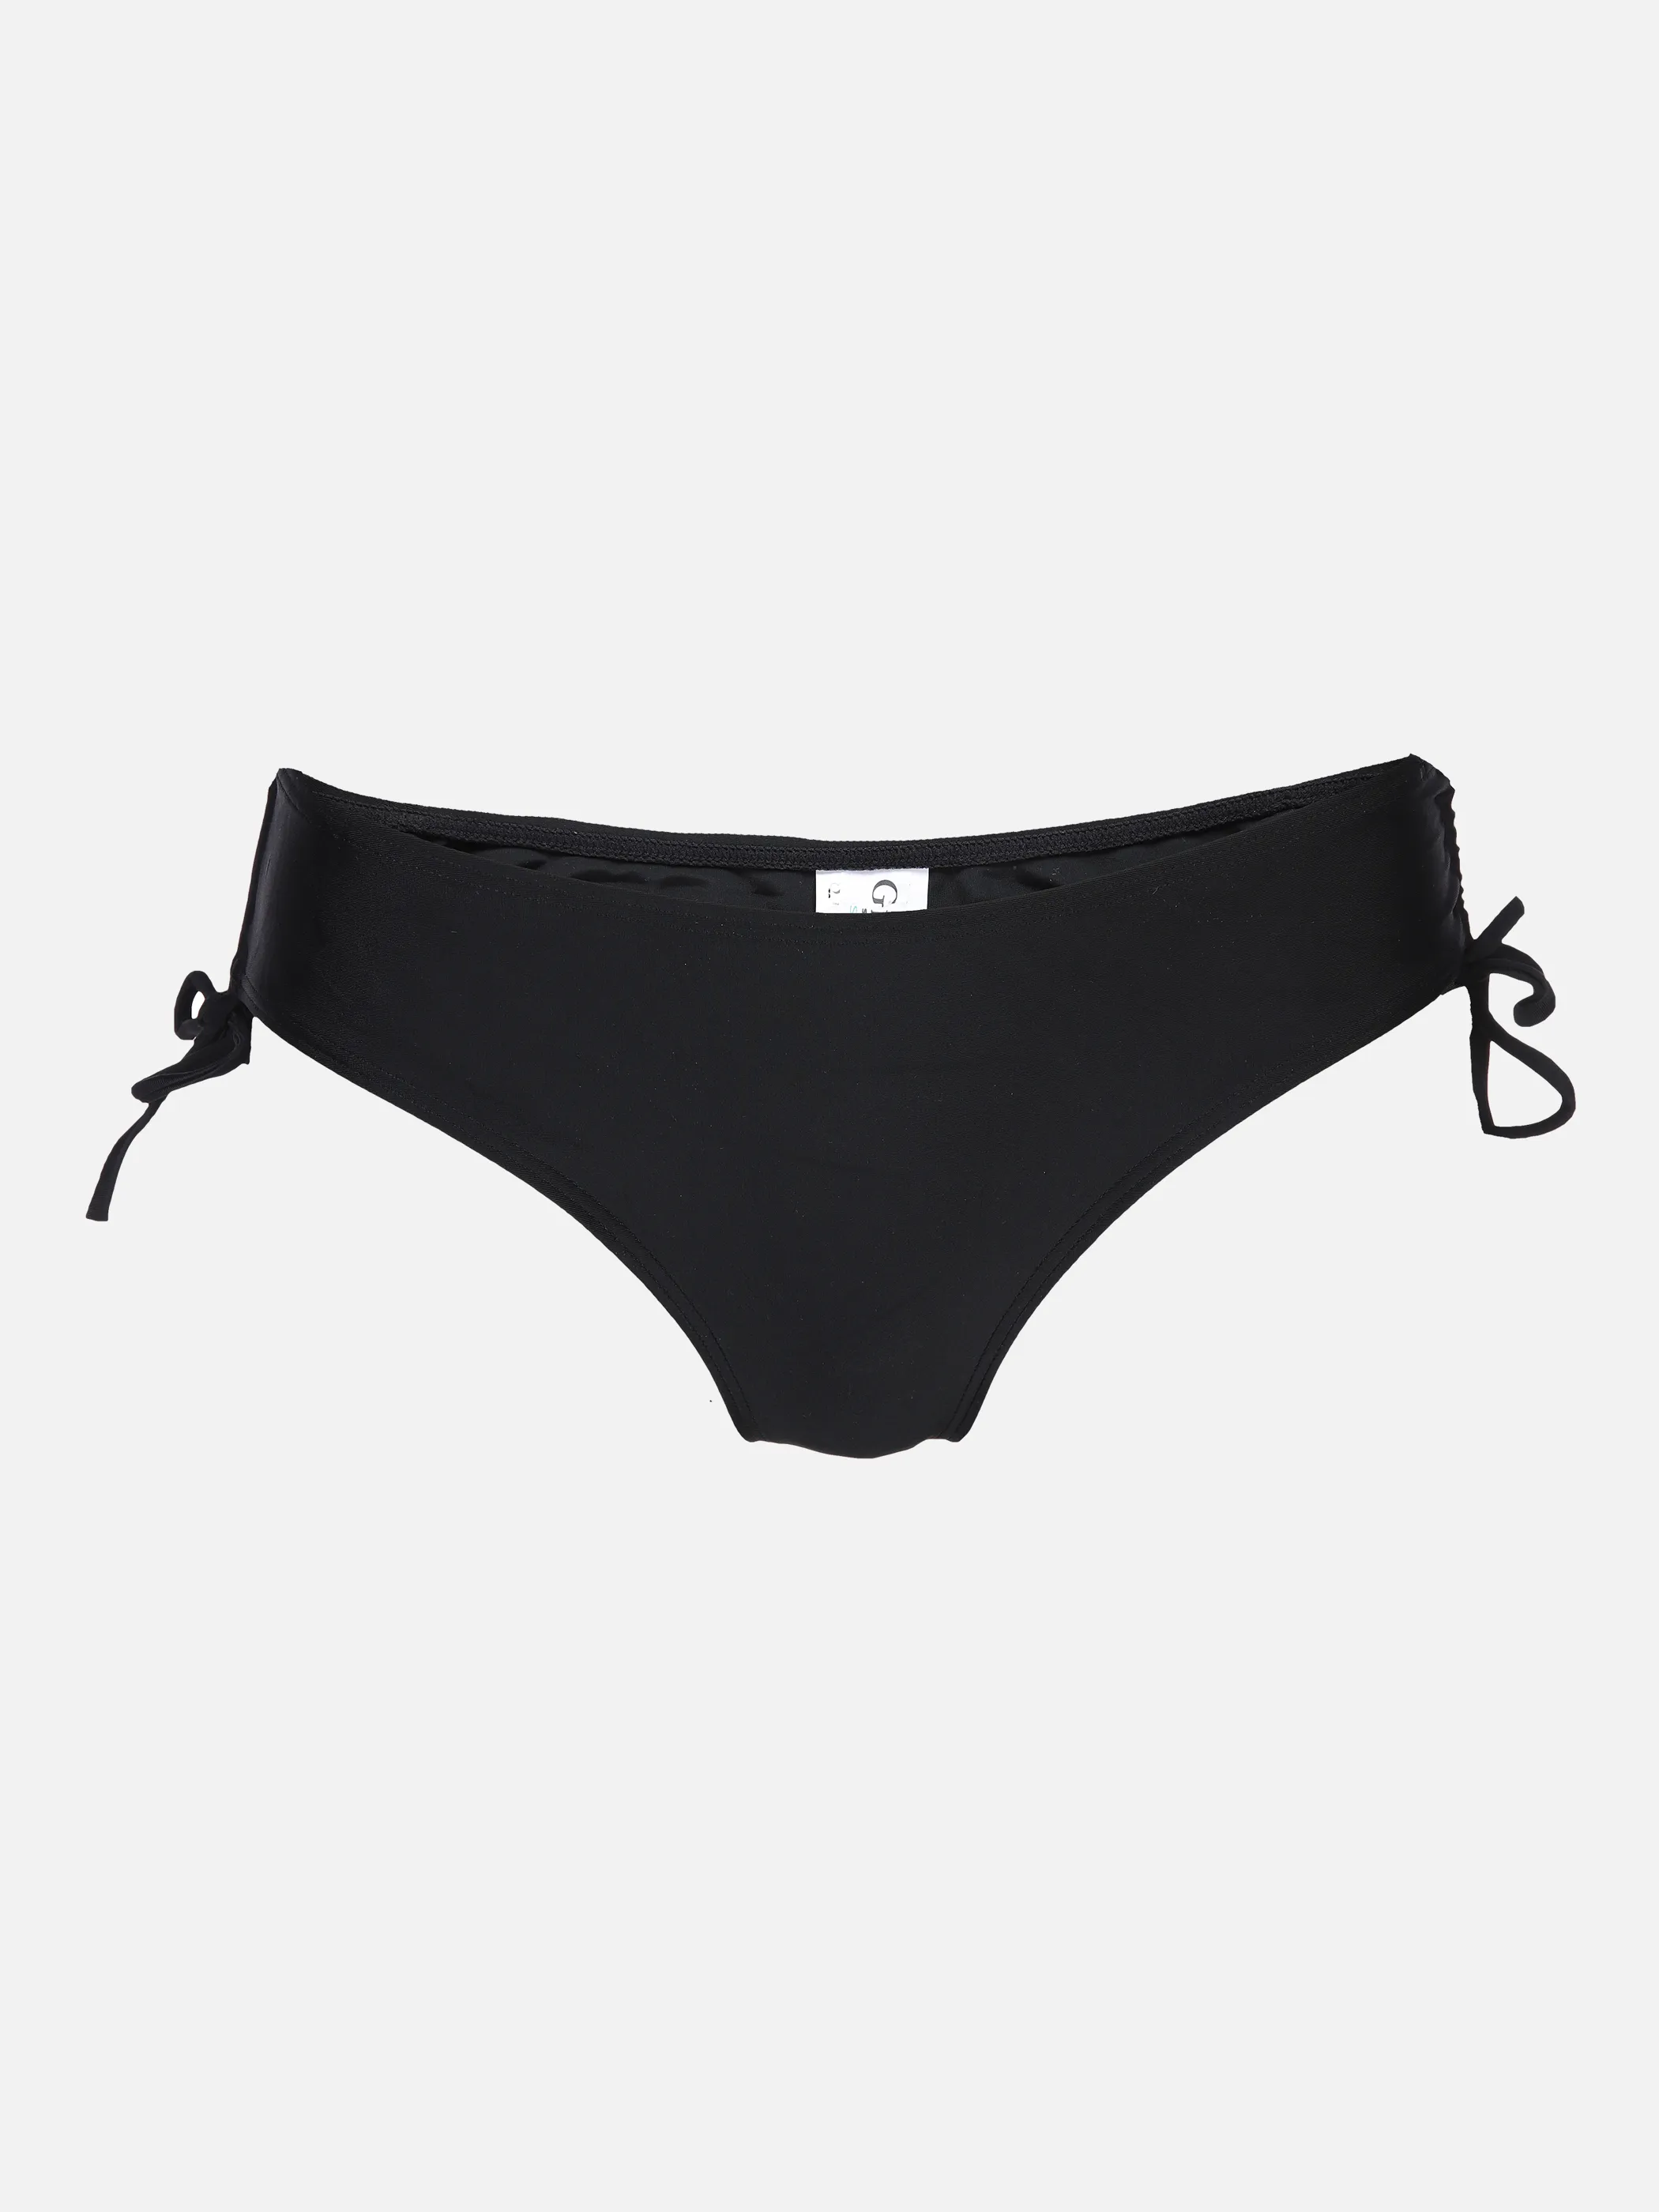 Grinario Sports Da-Bikini Hose uni Schwarz 877044 BLACK 1